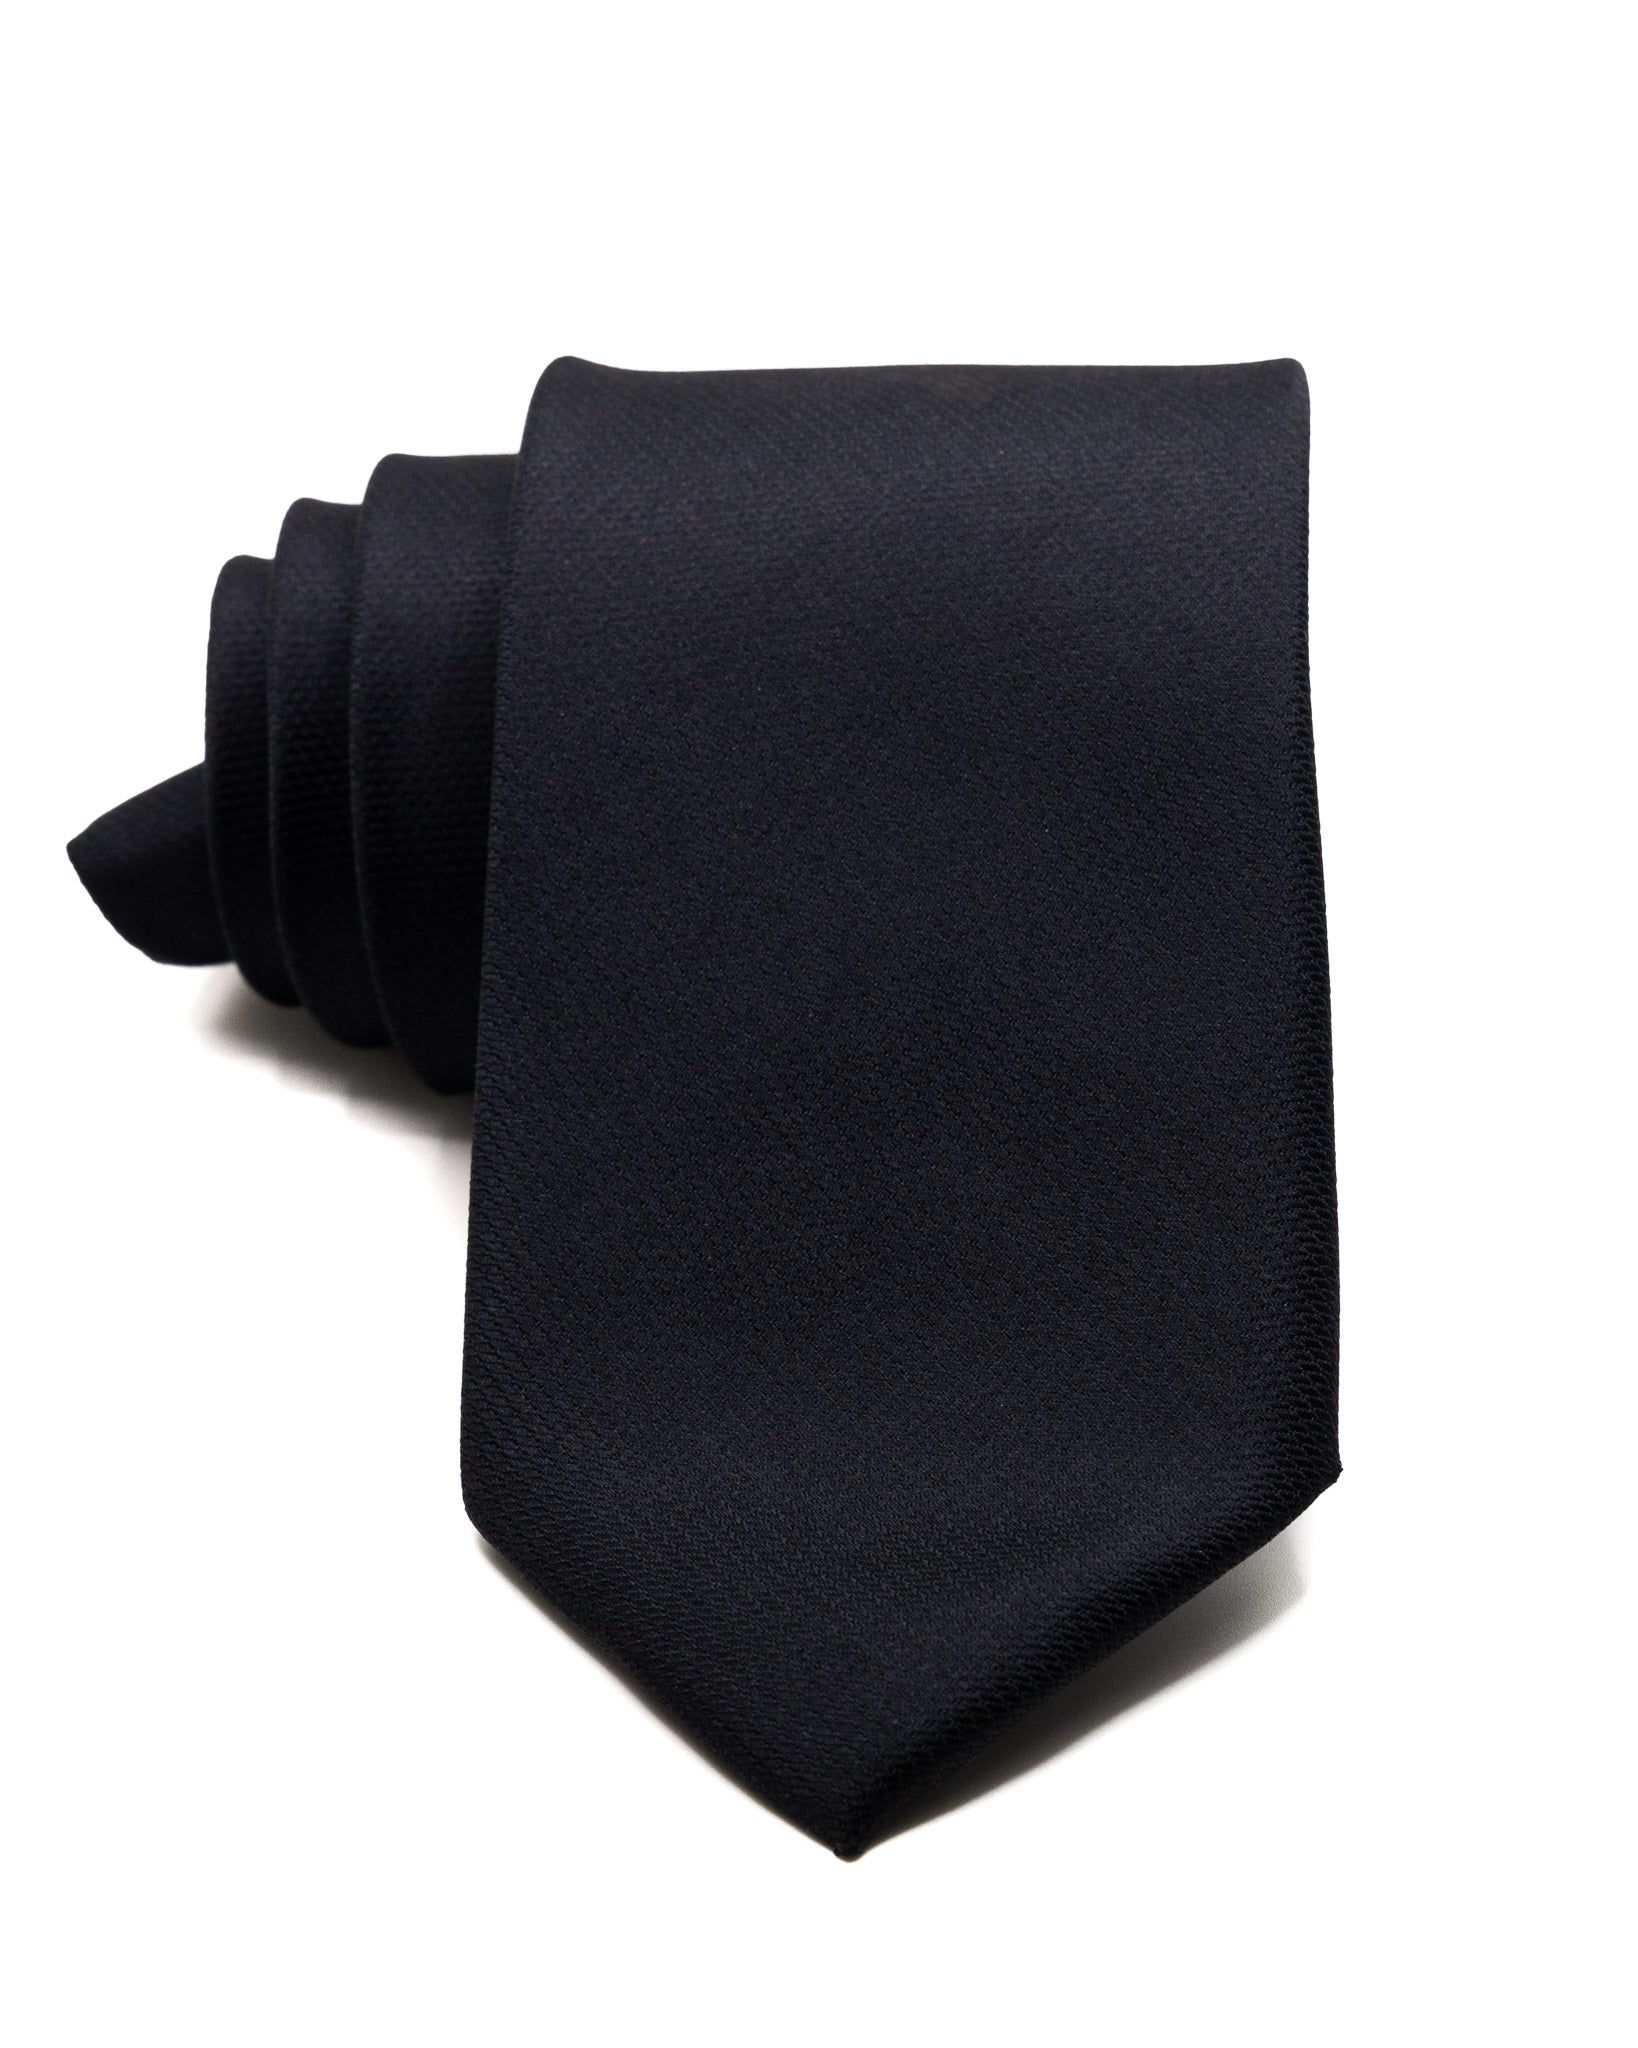 Tie - in black textured silk